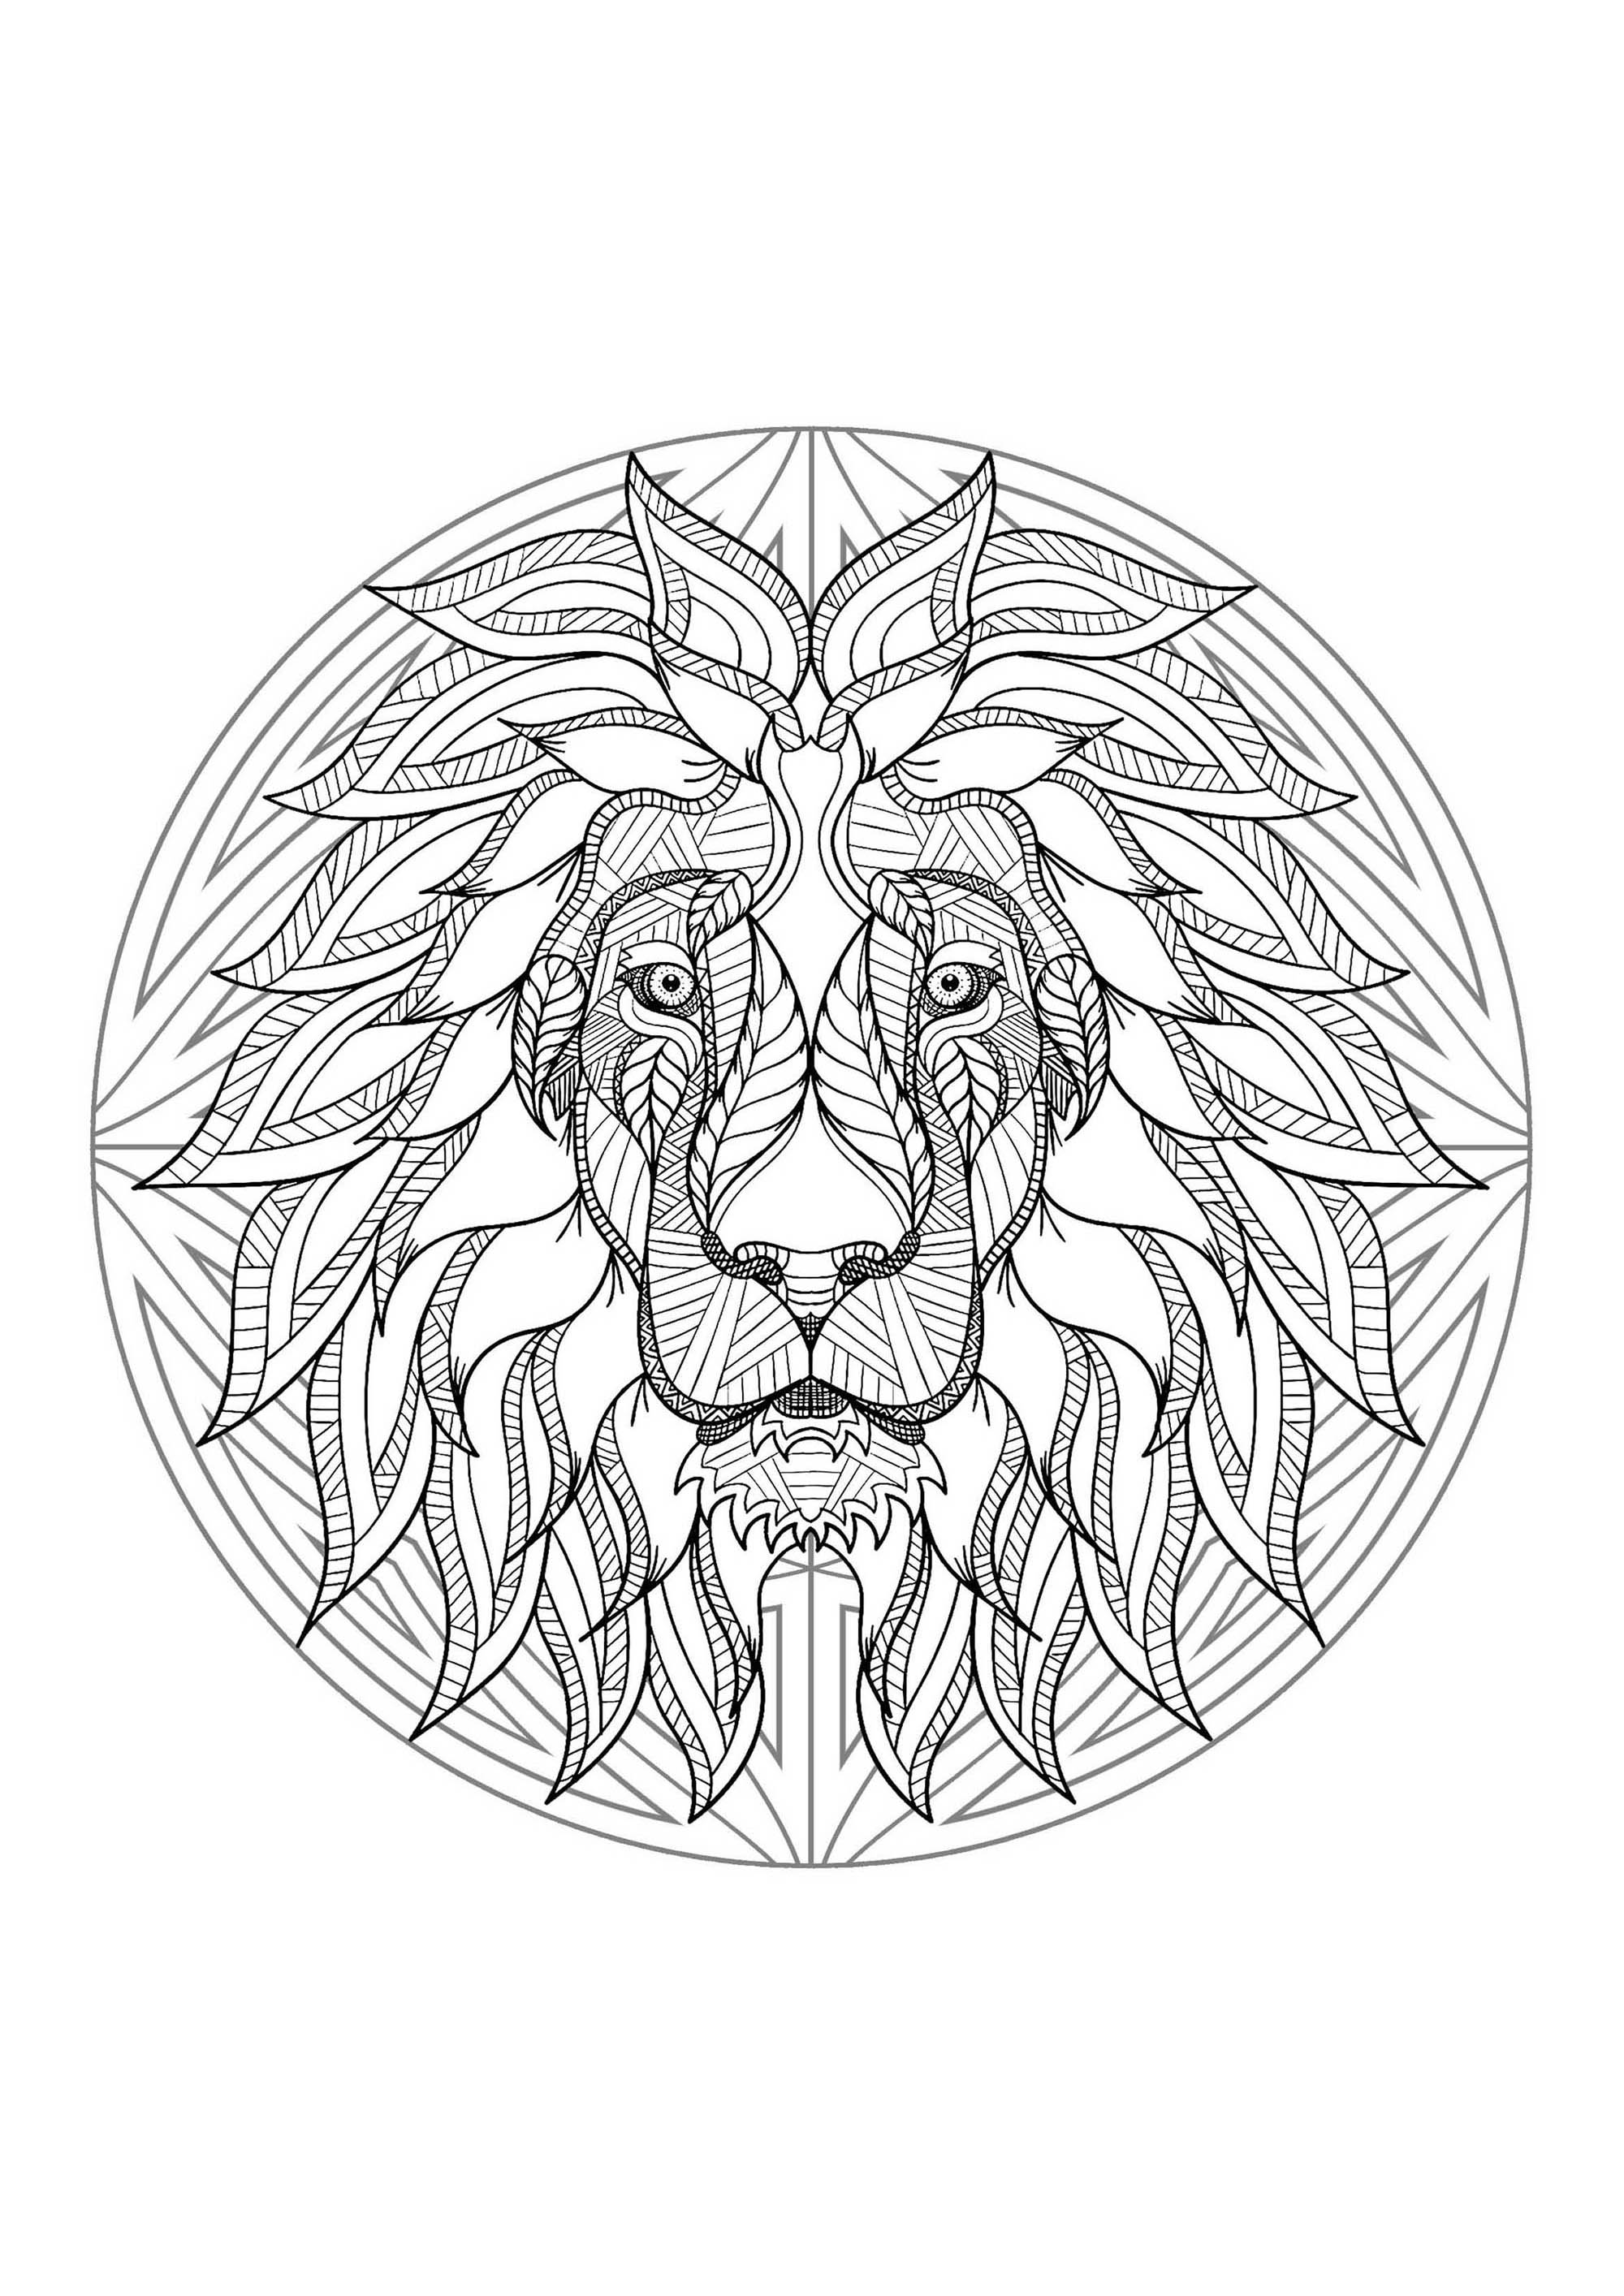 Mandala & Löwenkopf. Halten Sie Ihre Filz- und Bleistifte bereit, um die Farbgestaltung dieses Mandalas voller kleiner Details und ineinandergreifender Bereiche vorzunehmen.